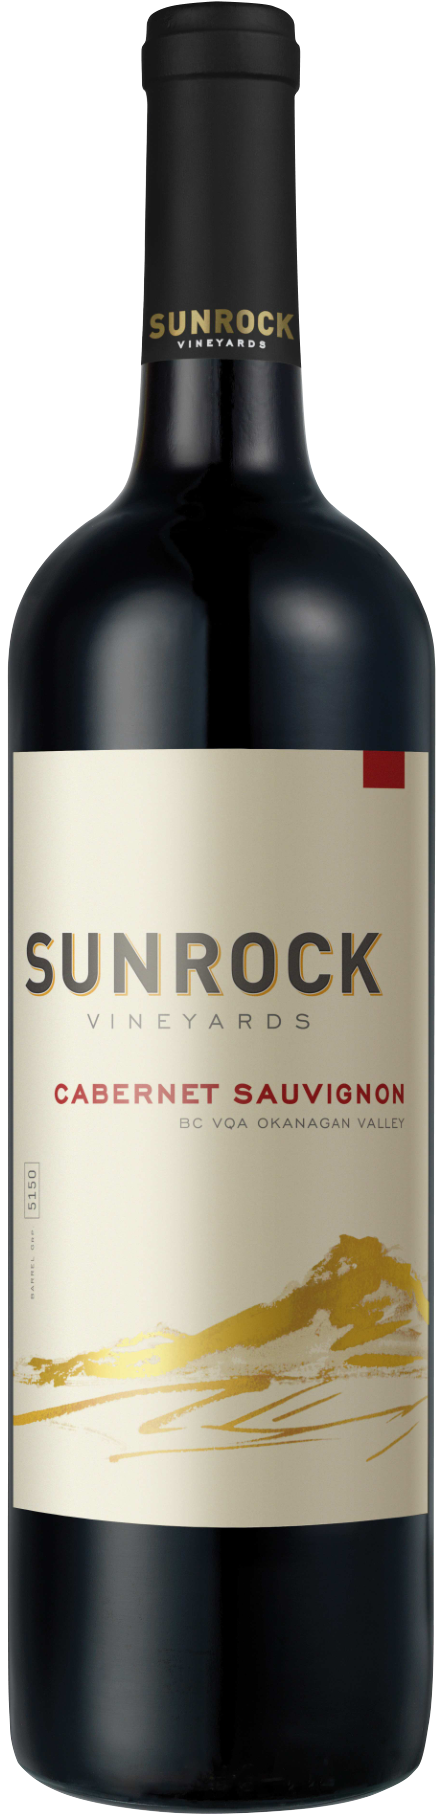 Sunrock Cabernet Sauvignon 2020